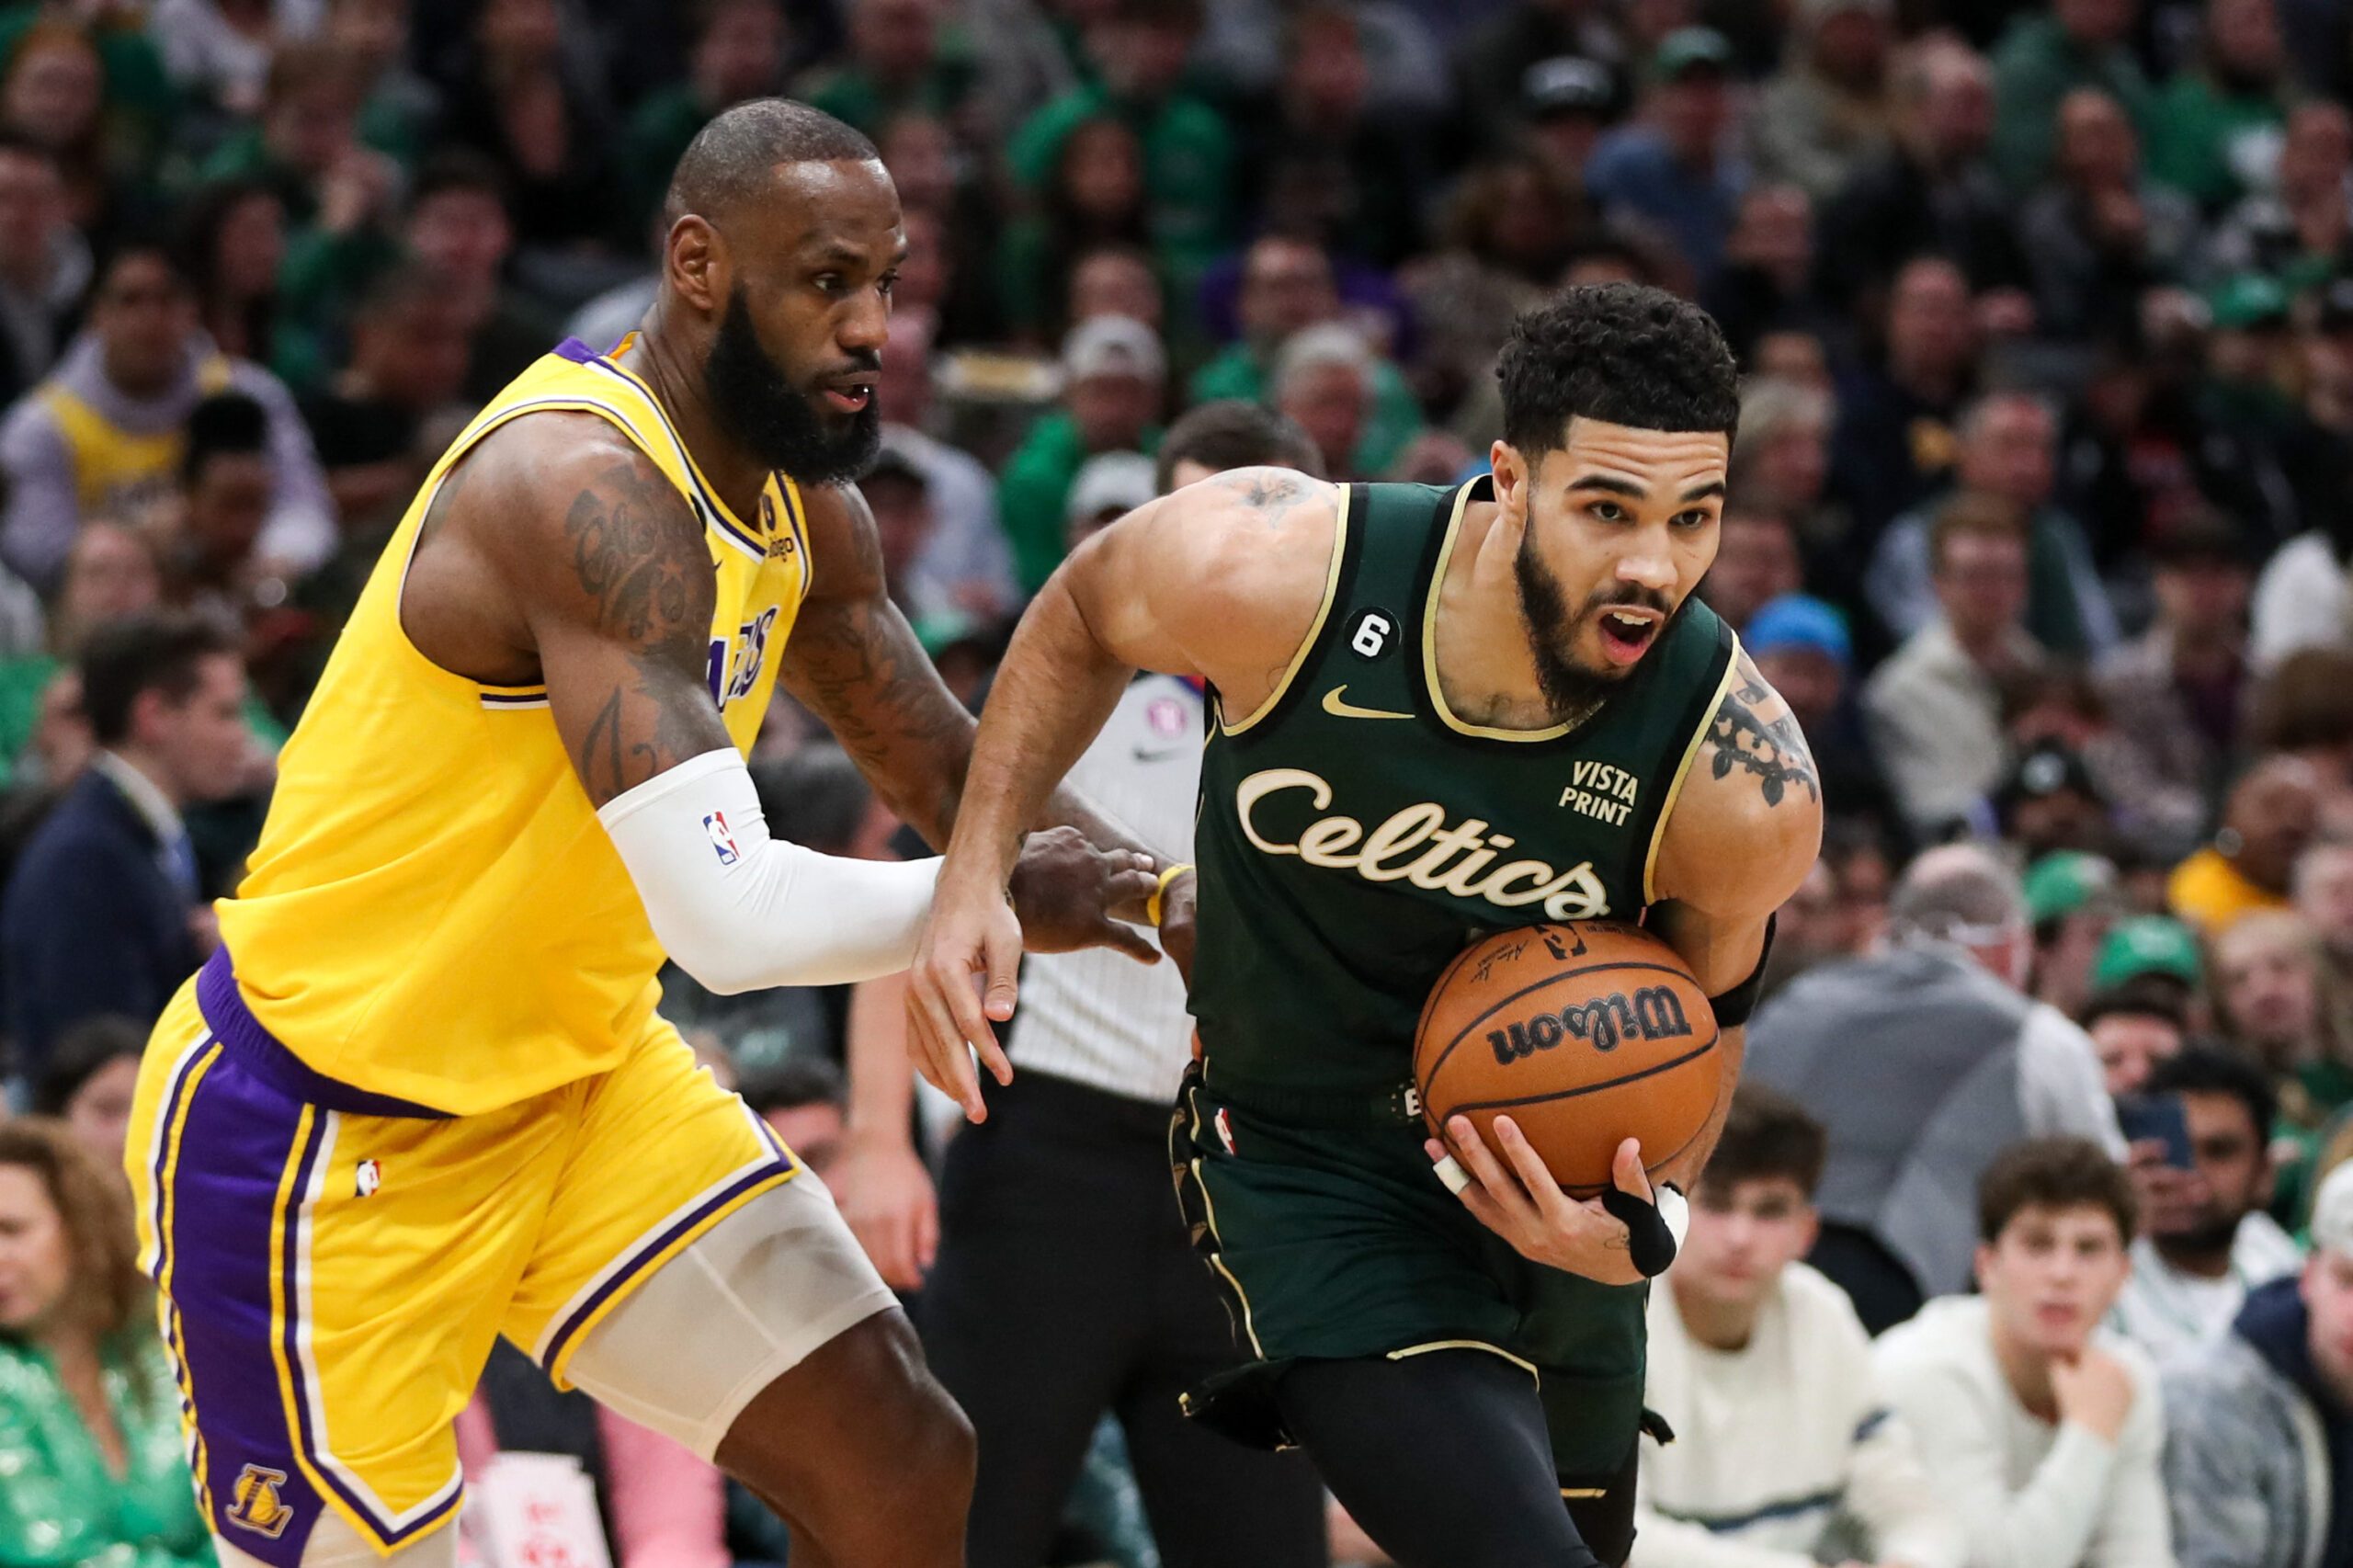 Jaylen Brown’s OT surge lifts Celtics over Lakers